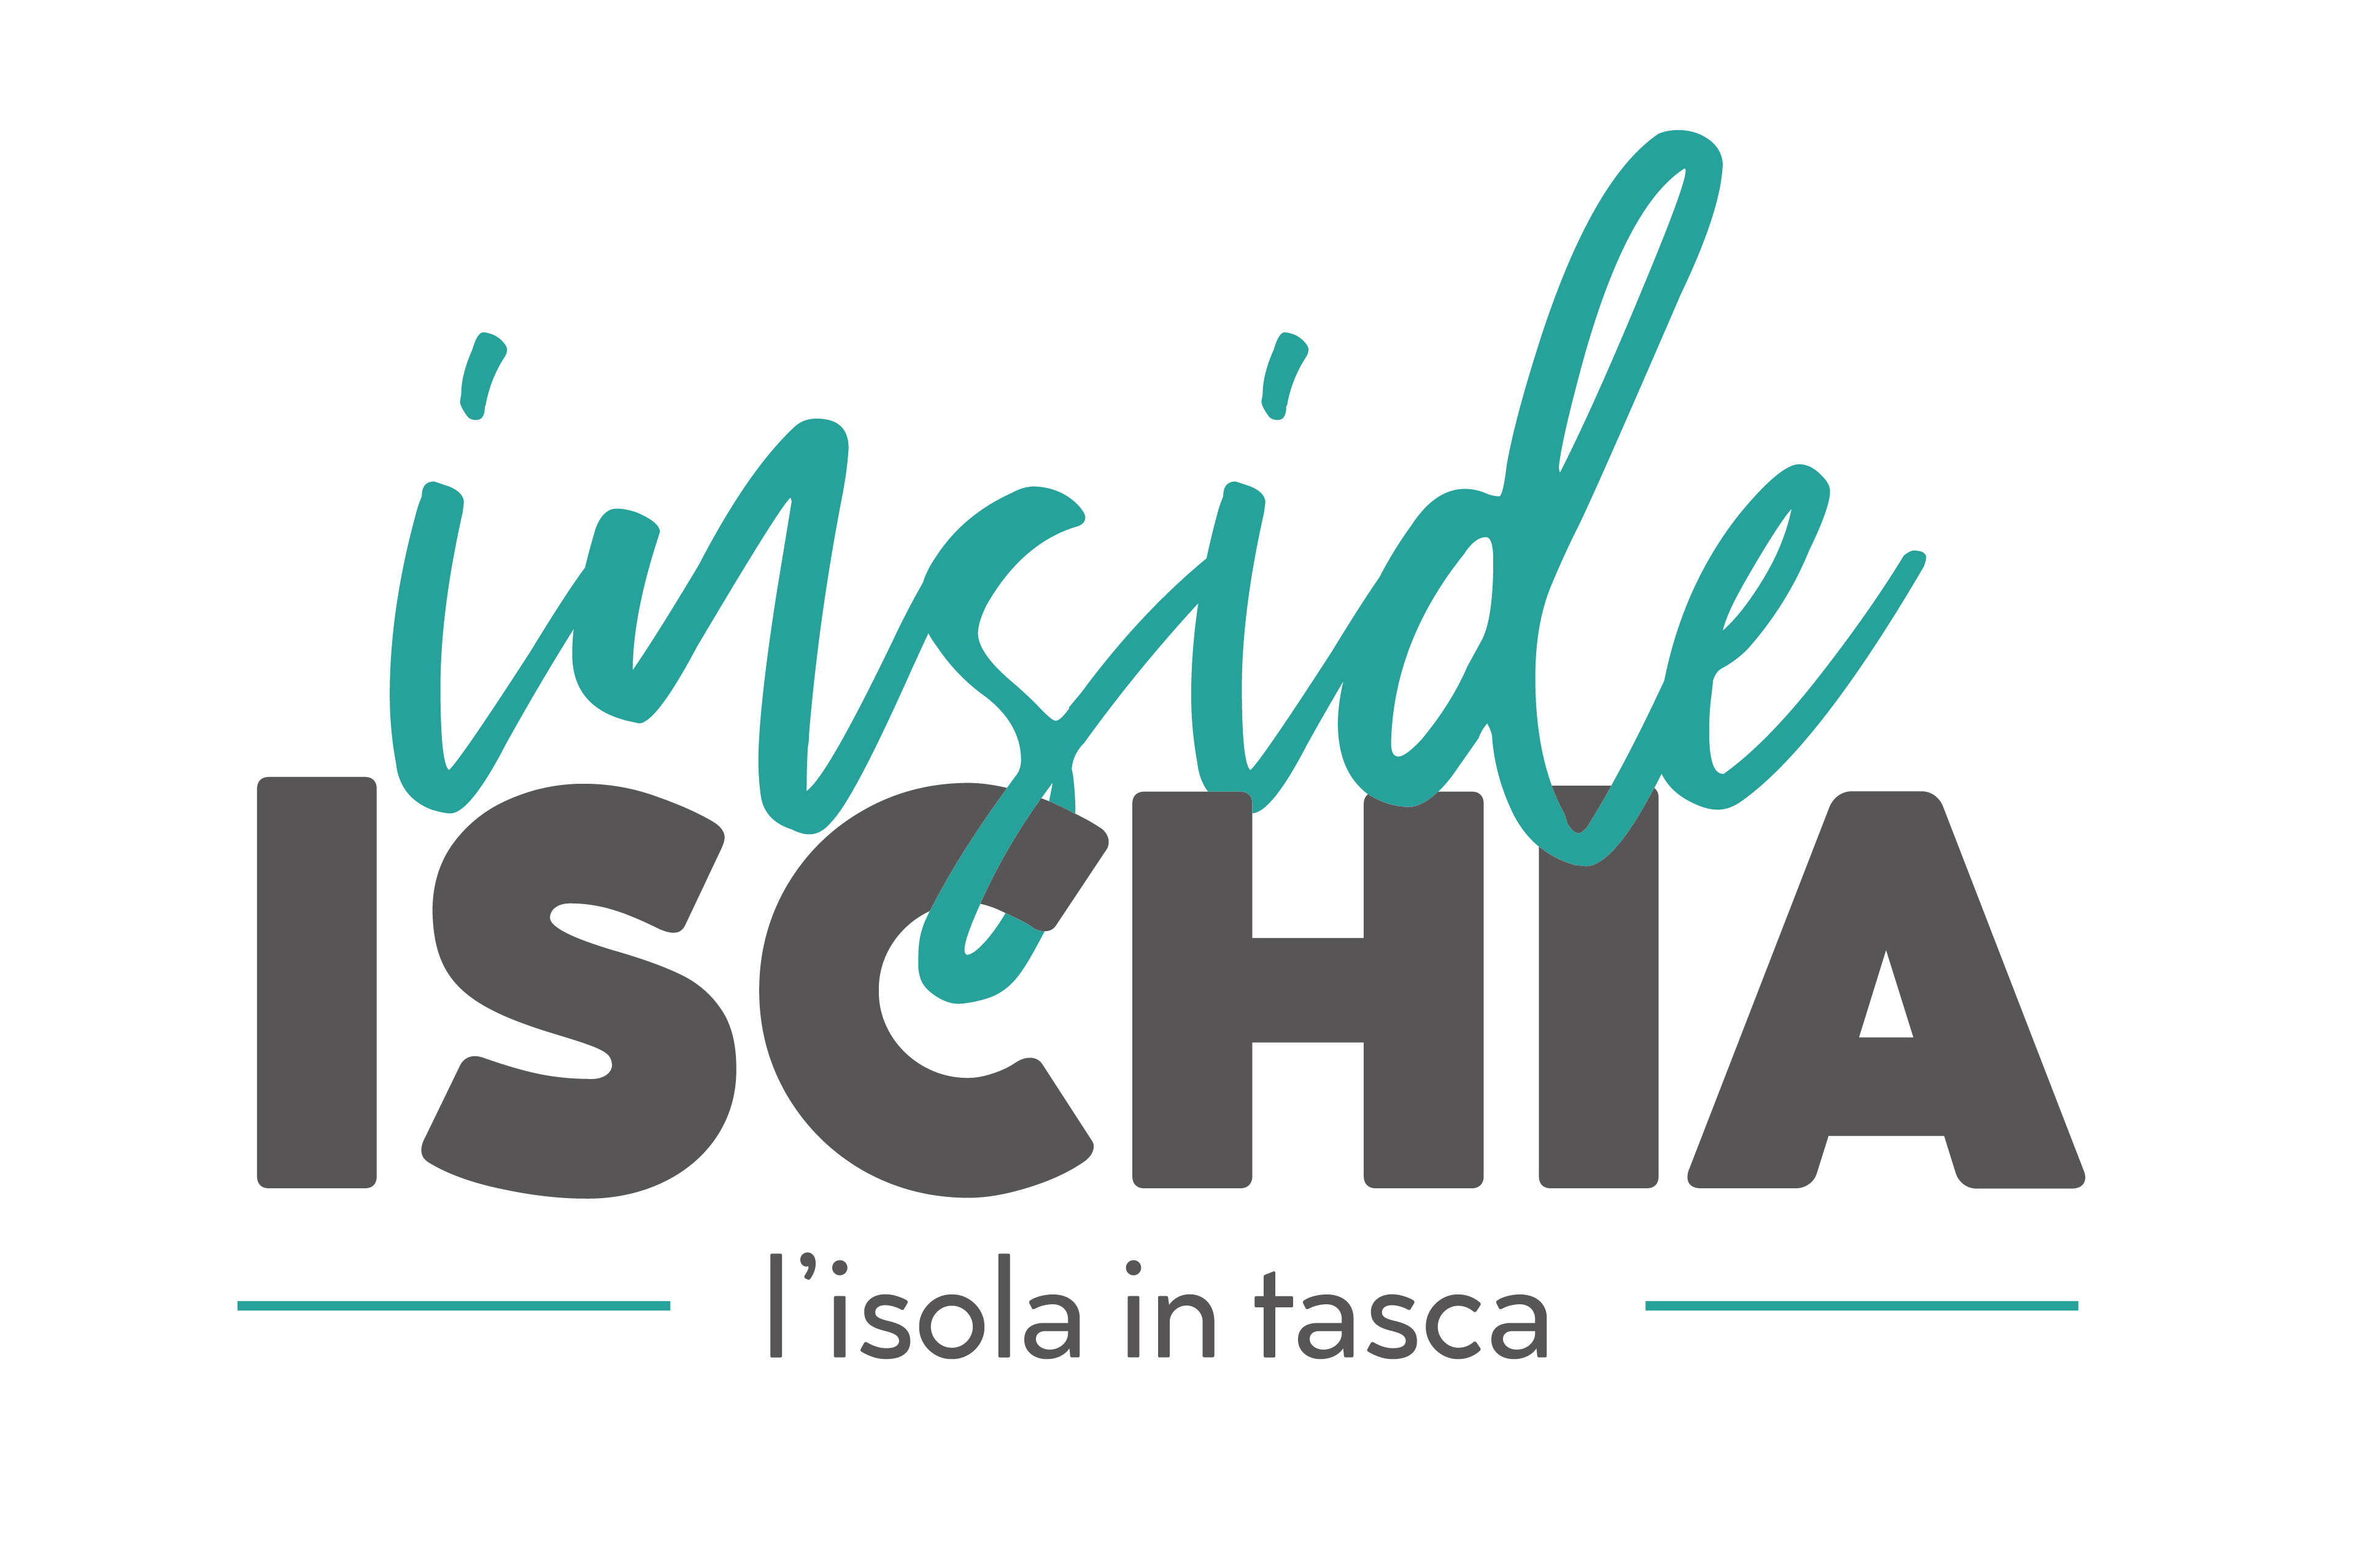 Guida Ischia Shopping